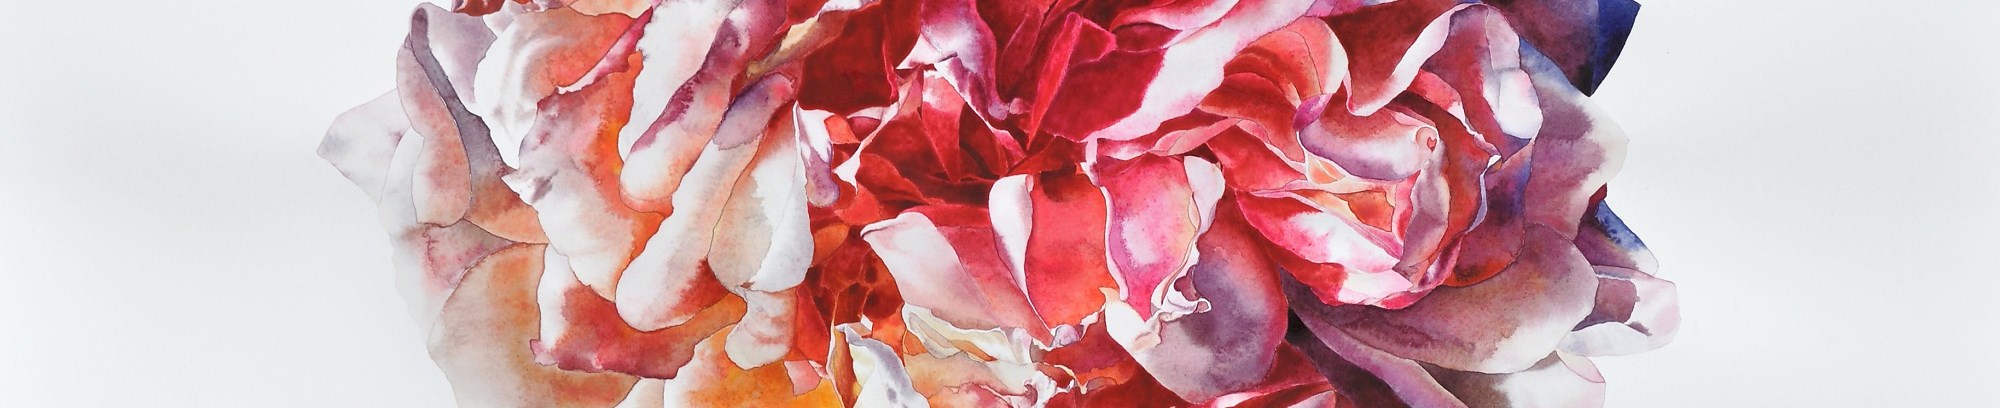 vild rose - figurativ akvarel - fra underviser Anne Skole Overgaard